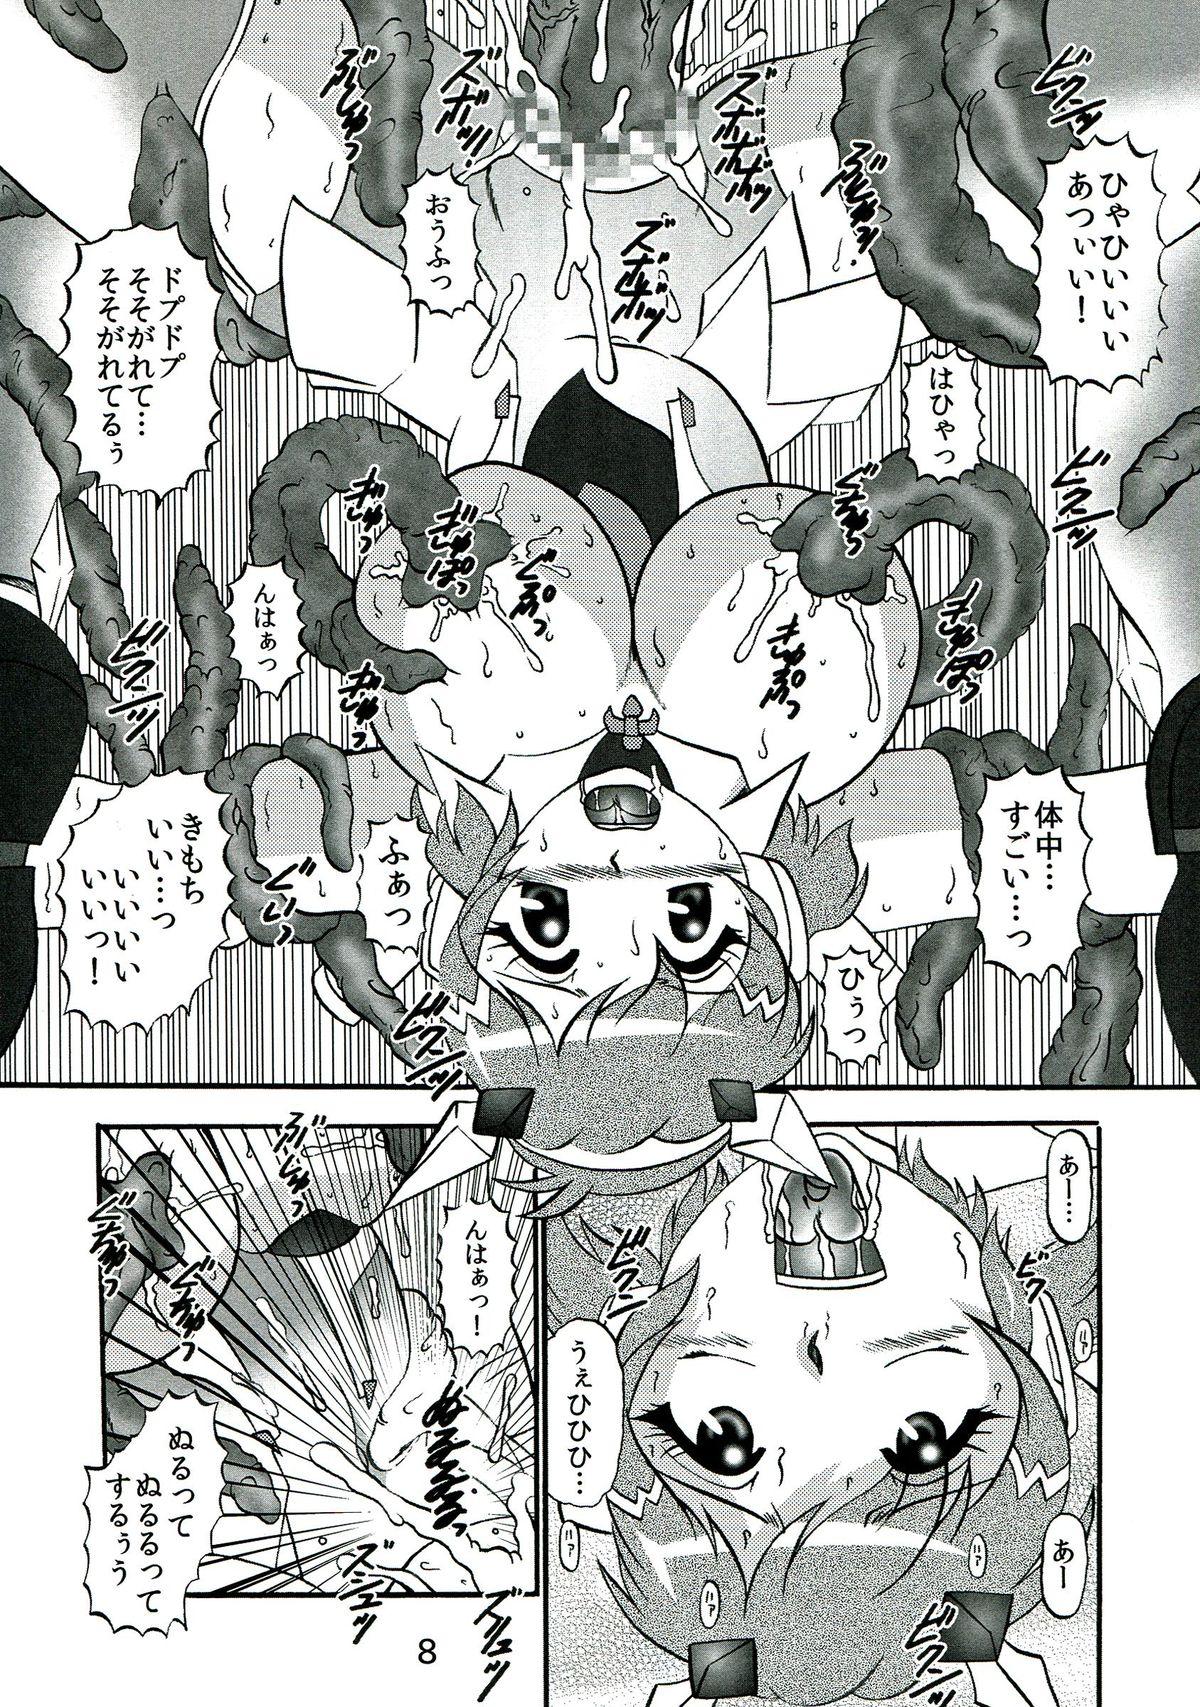 Mature Woman Seija no Shinshoku - Senki zesshou symphogear Tattoos - Page 8